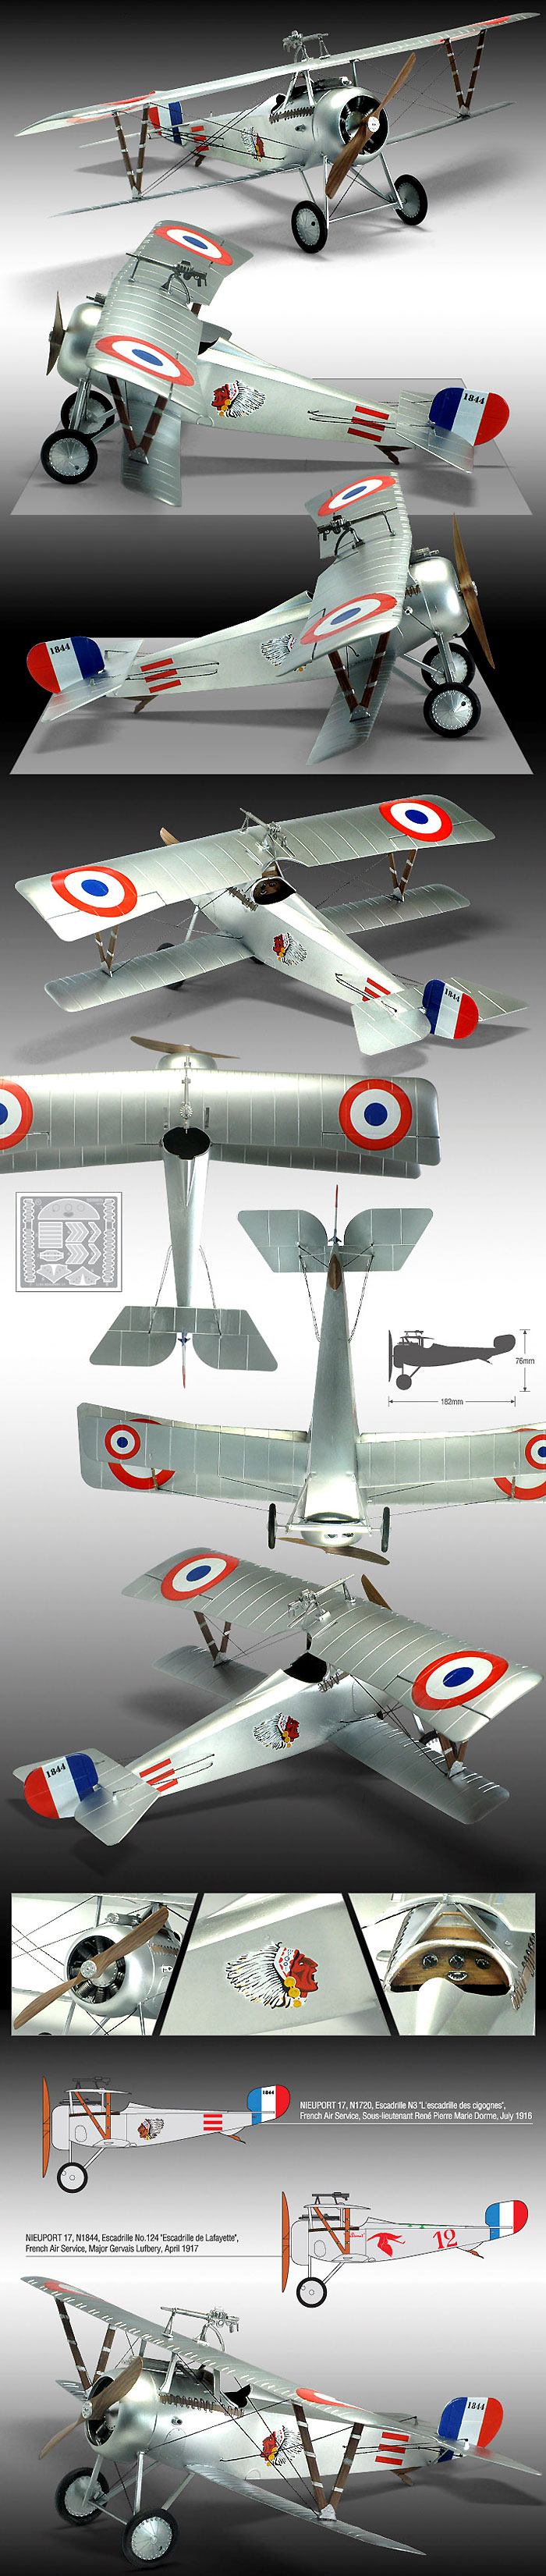 ニューポール 17 WW1 100周年 プラモデル (アカデミー 1/32 Scale Aircraft No.12121) 商品画像_2